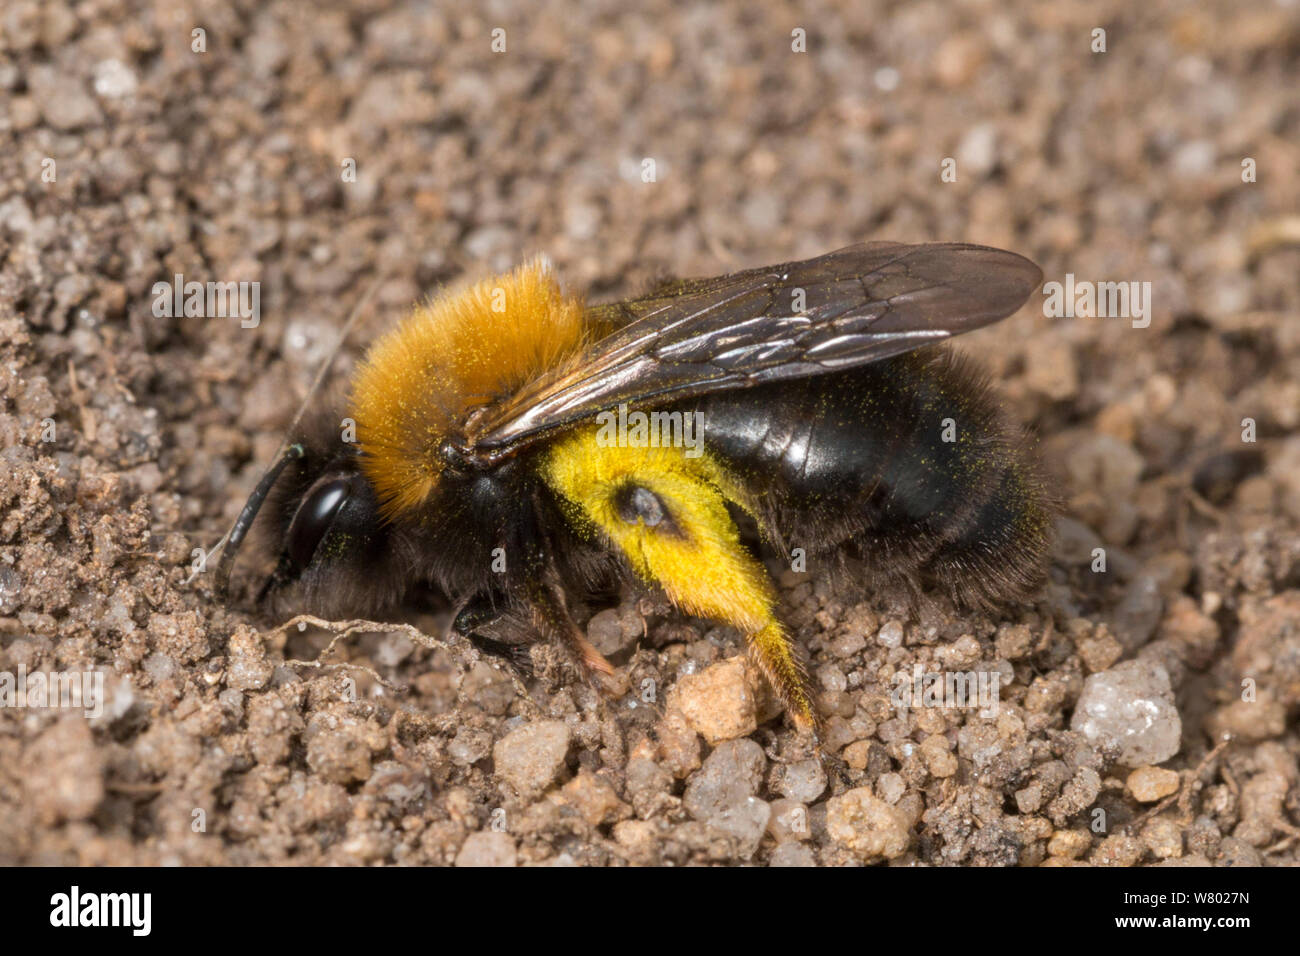 Minería (abeja Andrena clarkella) hembra excavando anidan en el suelo arenoso. Nota El polen polen amarillo recubiertos de pelos de cabra sauce (Salix caprea), una importante fuente de alimento para los polinizadores a principios de la primavera. Peak District National Park, Derbyshire, Reino Unido. De abril. Foto de stock